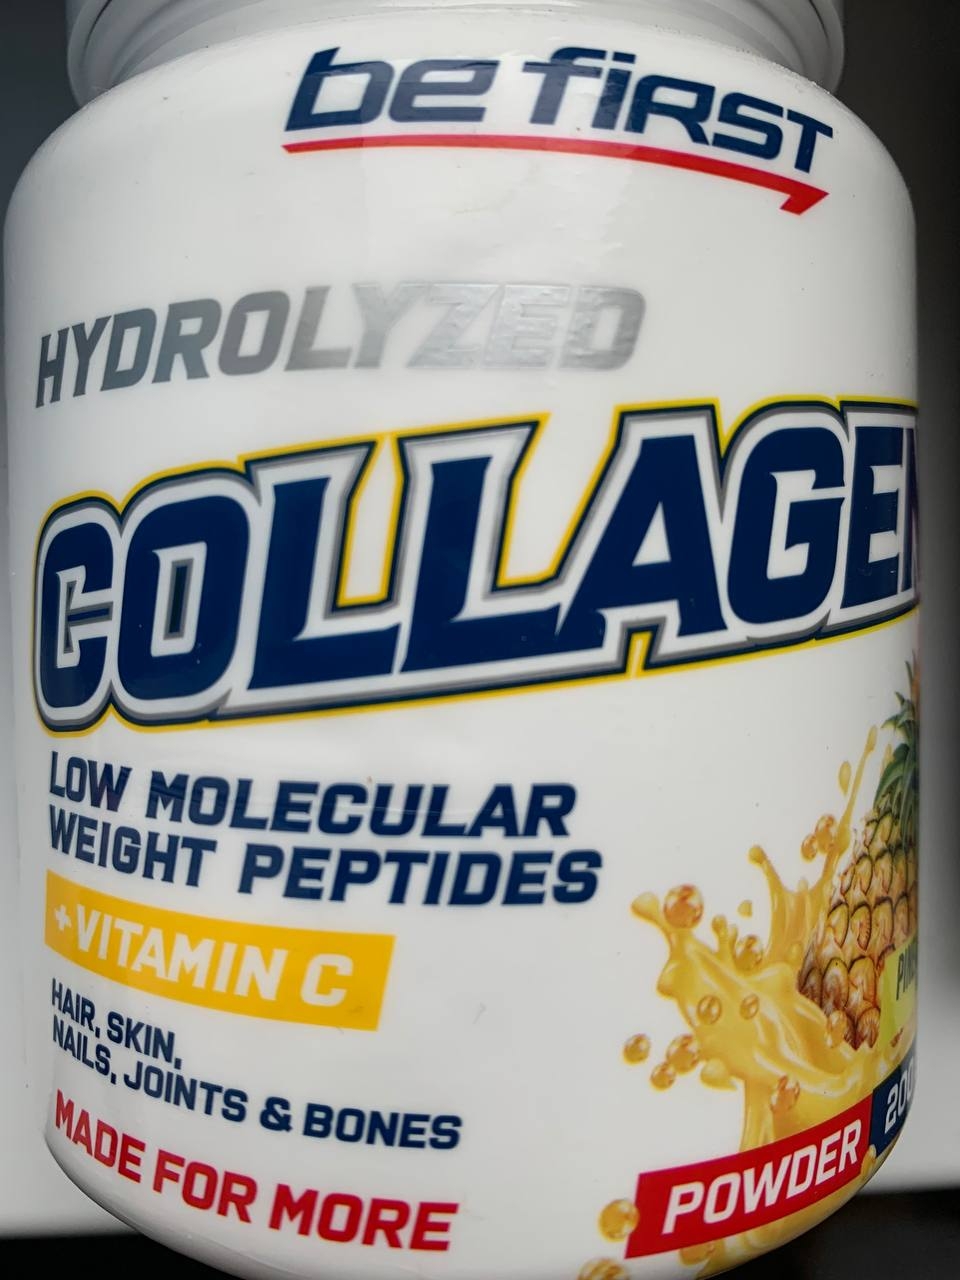 Be first First Collagen Powder - Питание, укрепление и защита